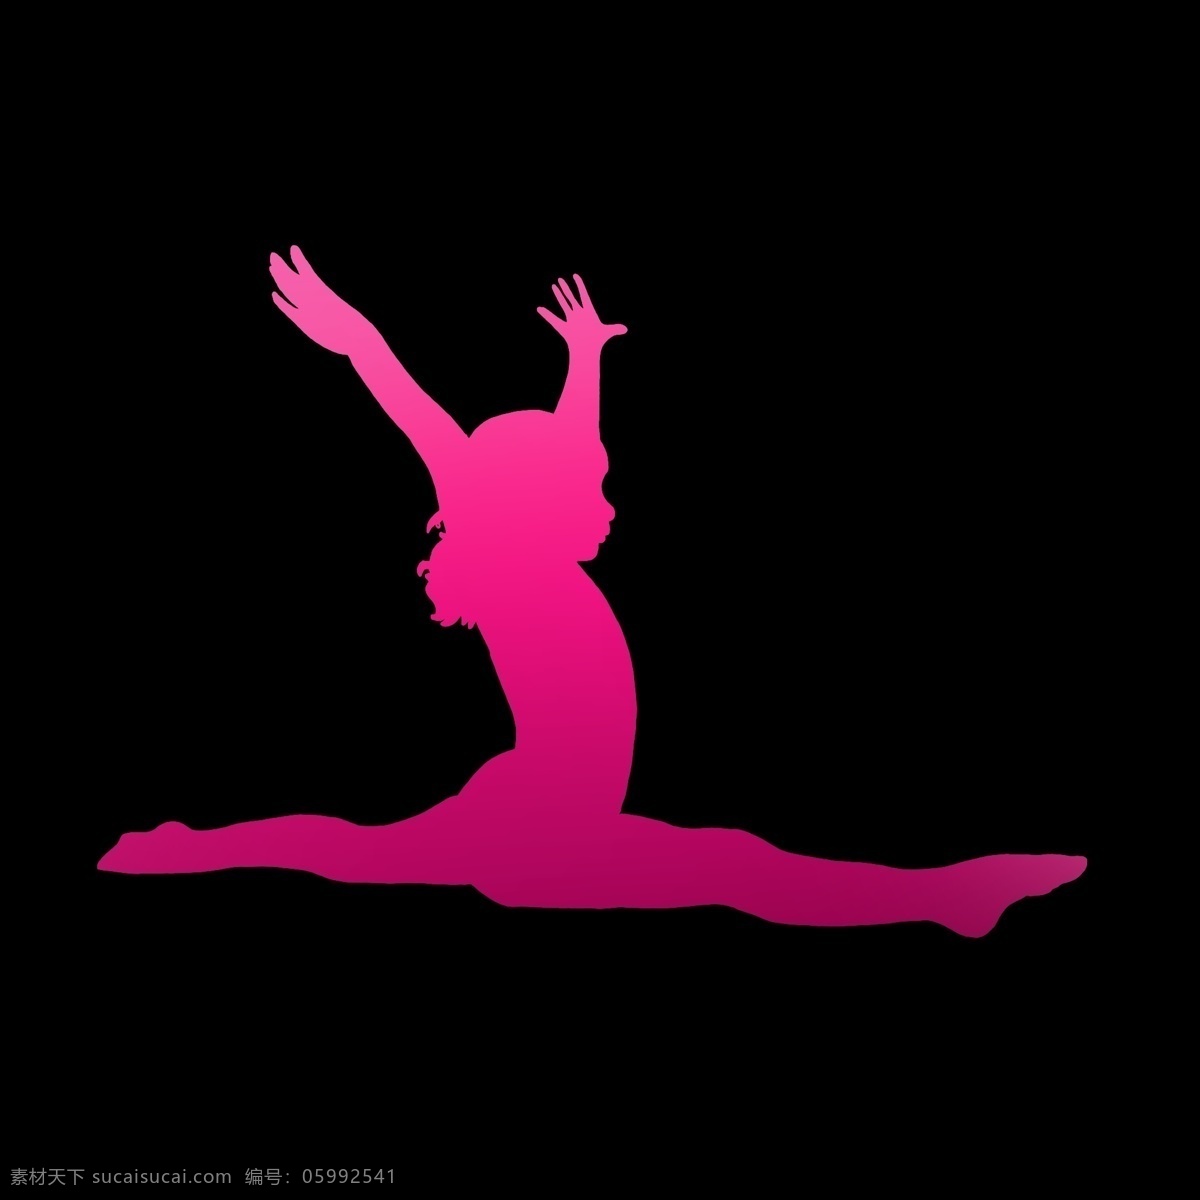 红色 渐变 跳舞 女孩 舞蹈演员 女演员 形状 剪影 图案 动作 奔跑的样子 速度 运动 激情 节奏 ppt可用 纯色 简约 简洁 简单